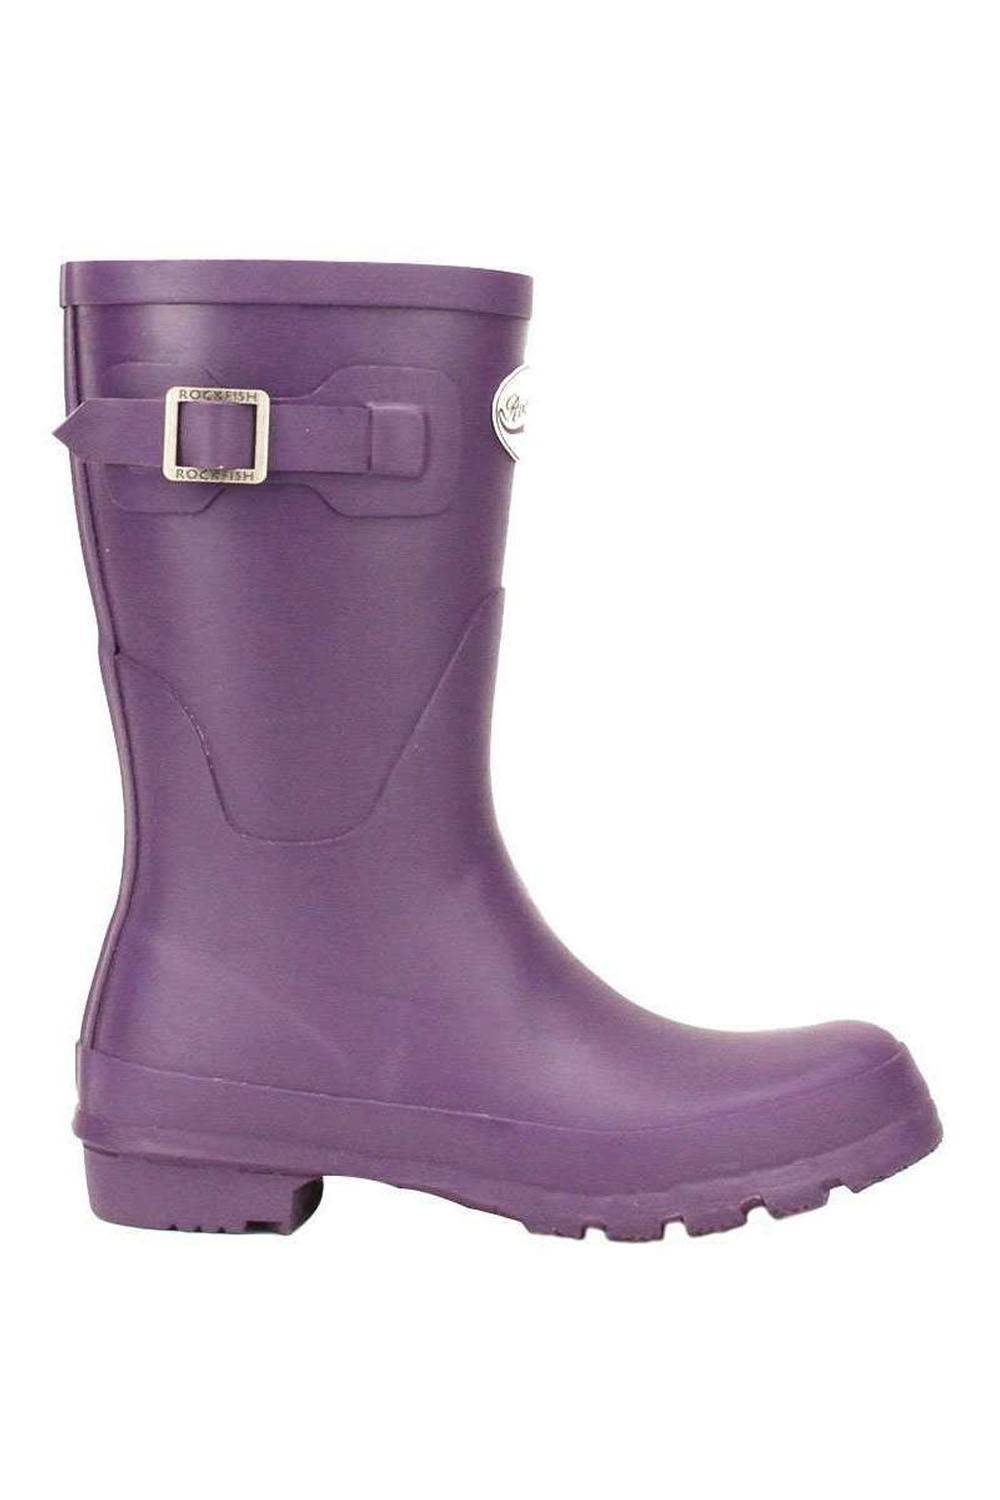 rei sustainable rain boots